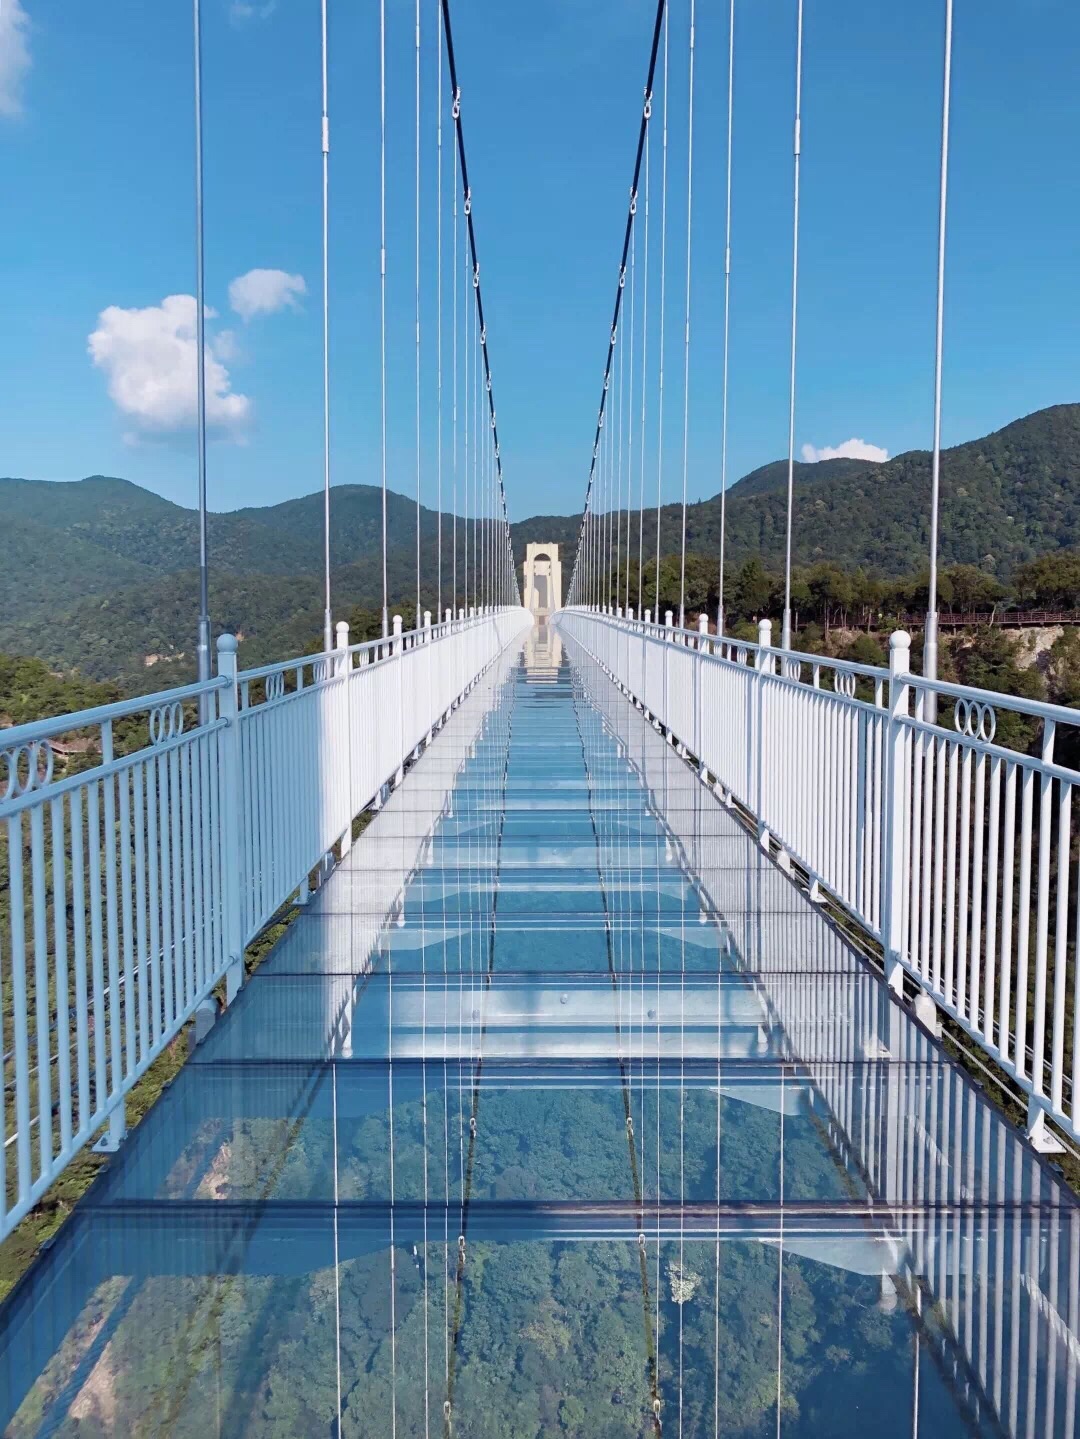 清远黄腾峡天门悬廊玻璃桥一日游 - 清远游记攻略【携程攻略】